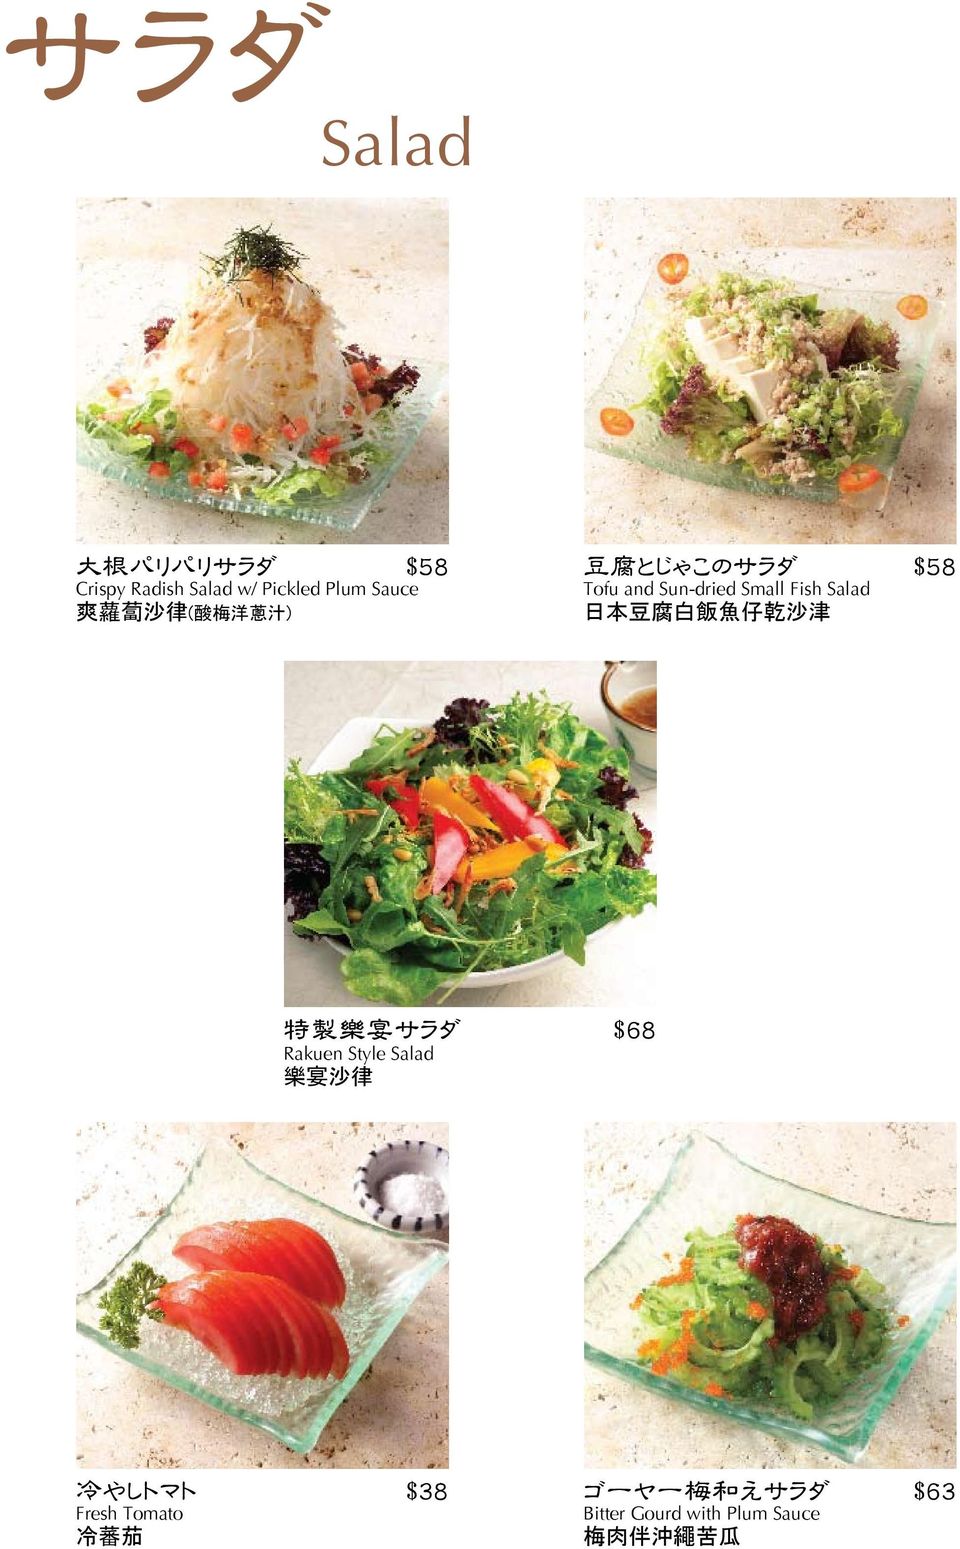 腐 白 飯 魚 仔 乾 沙 津 特 製 樂 宴 サラダ $68 Rakuen Style Salad 樂 宴 沙 律 冷 やしトマト $38